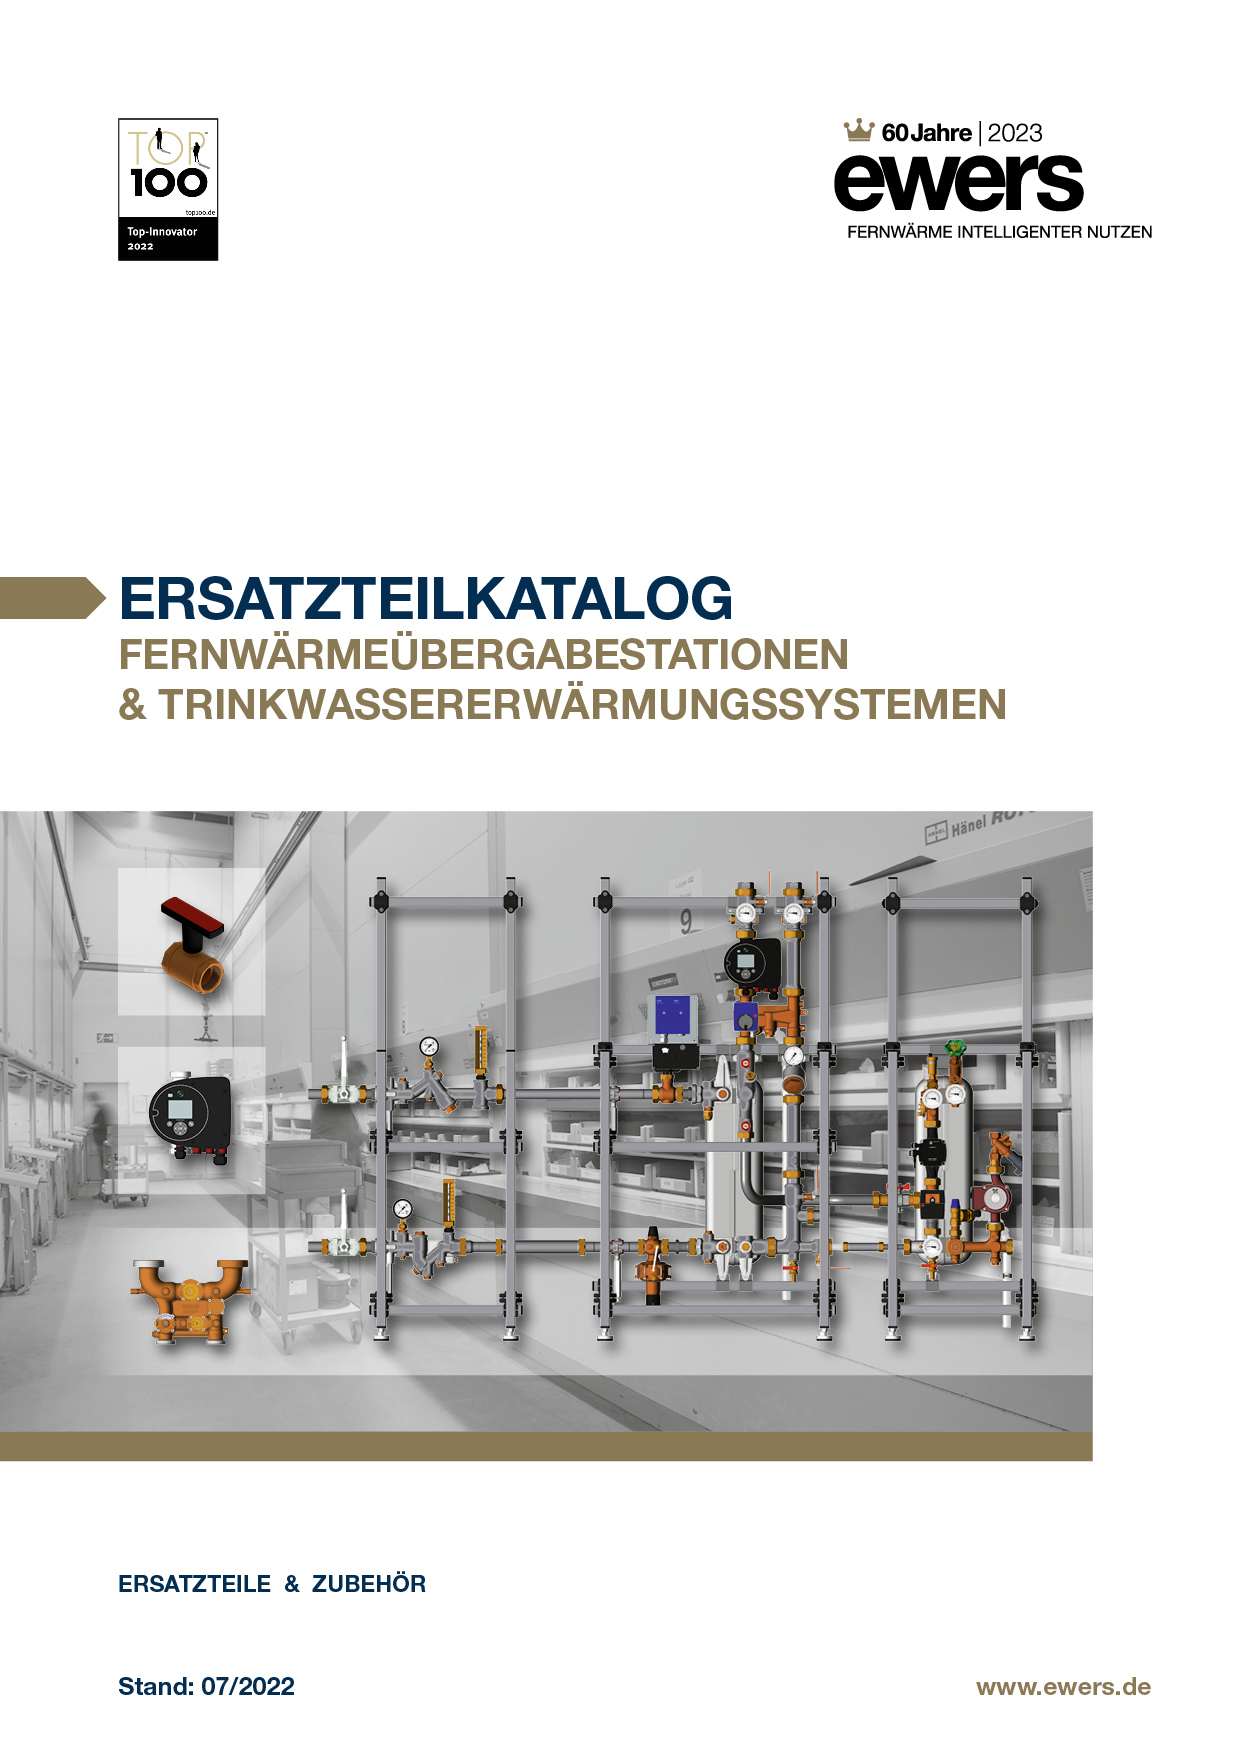 ewers - Ersatzteilkatalog - Ersatzteil & Zubehör - Service - Fernwärmeübergabestationen & Trinkwassererwärmungssystemen